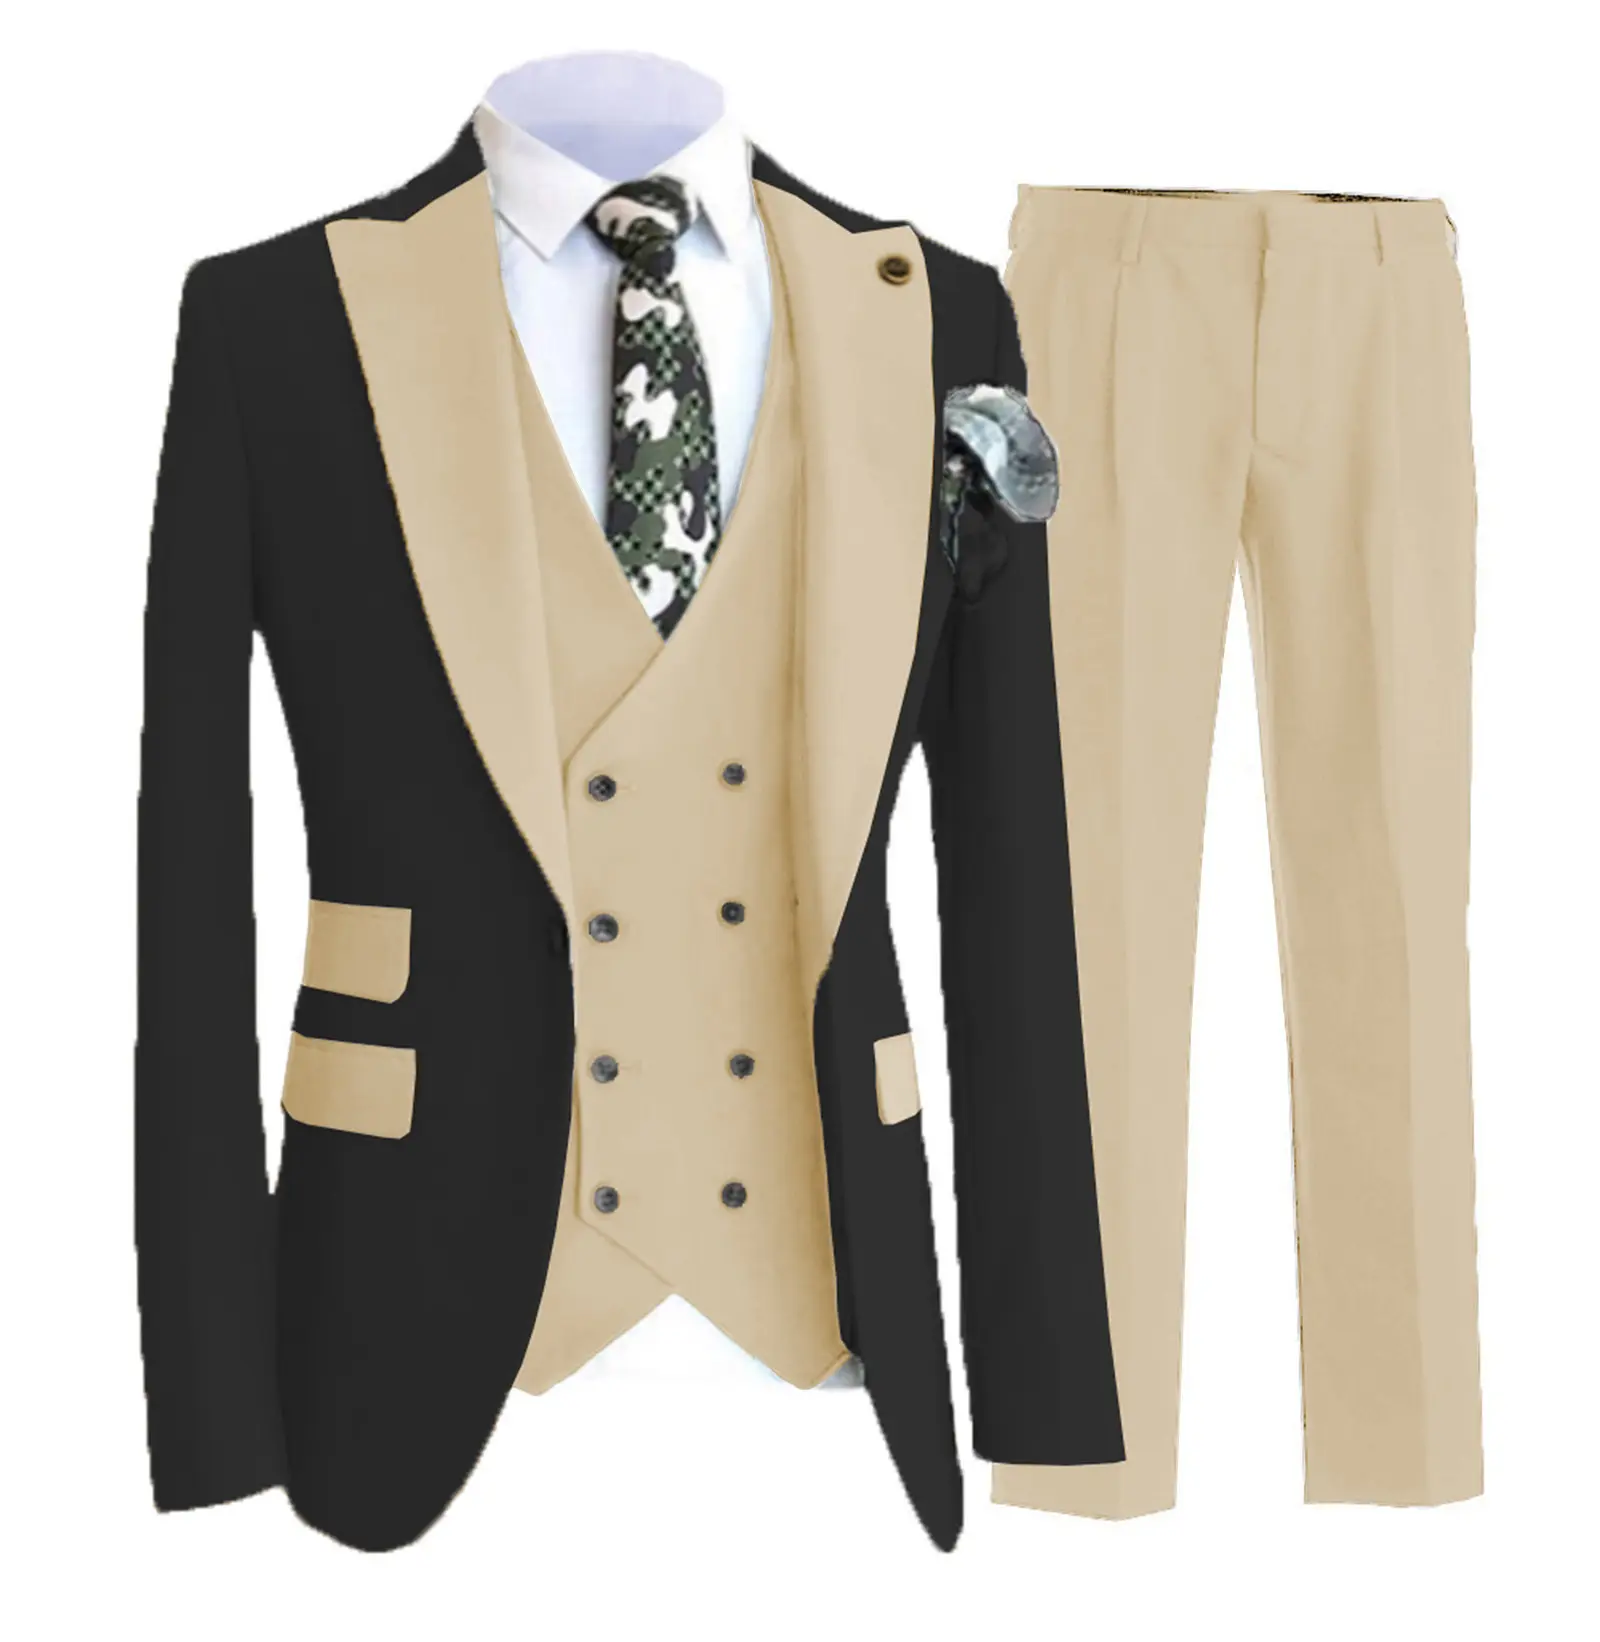 2022 Costume smart bespoke slim fit groom wedding tuxedo for gentleman 3 business leisure pieces jacket blazer set men's suits